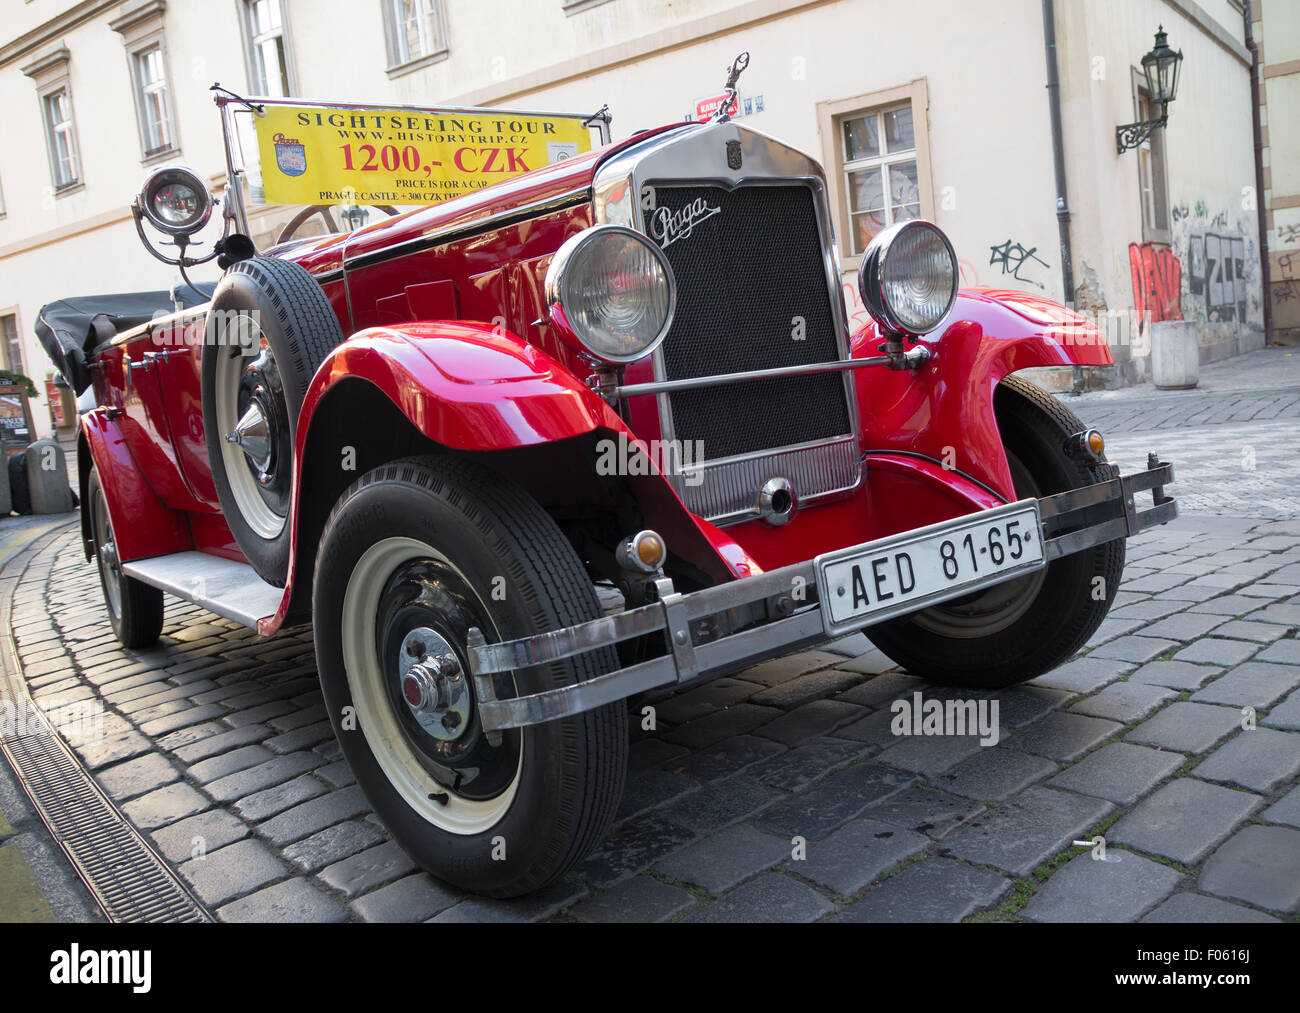 Praga rouge voiture utilisée pour des visites guidées dans les rues de Prague. Banque D'Images